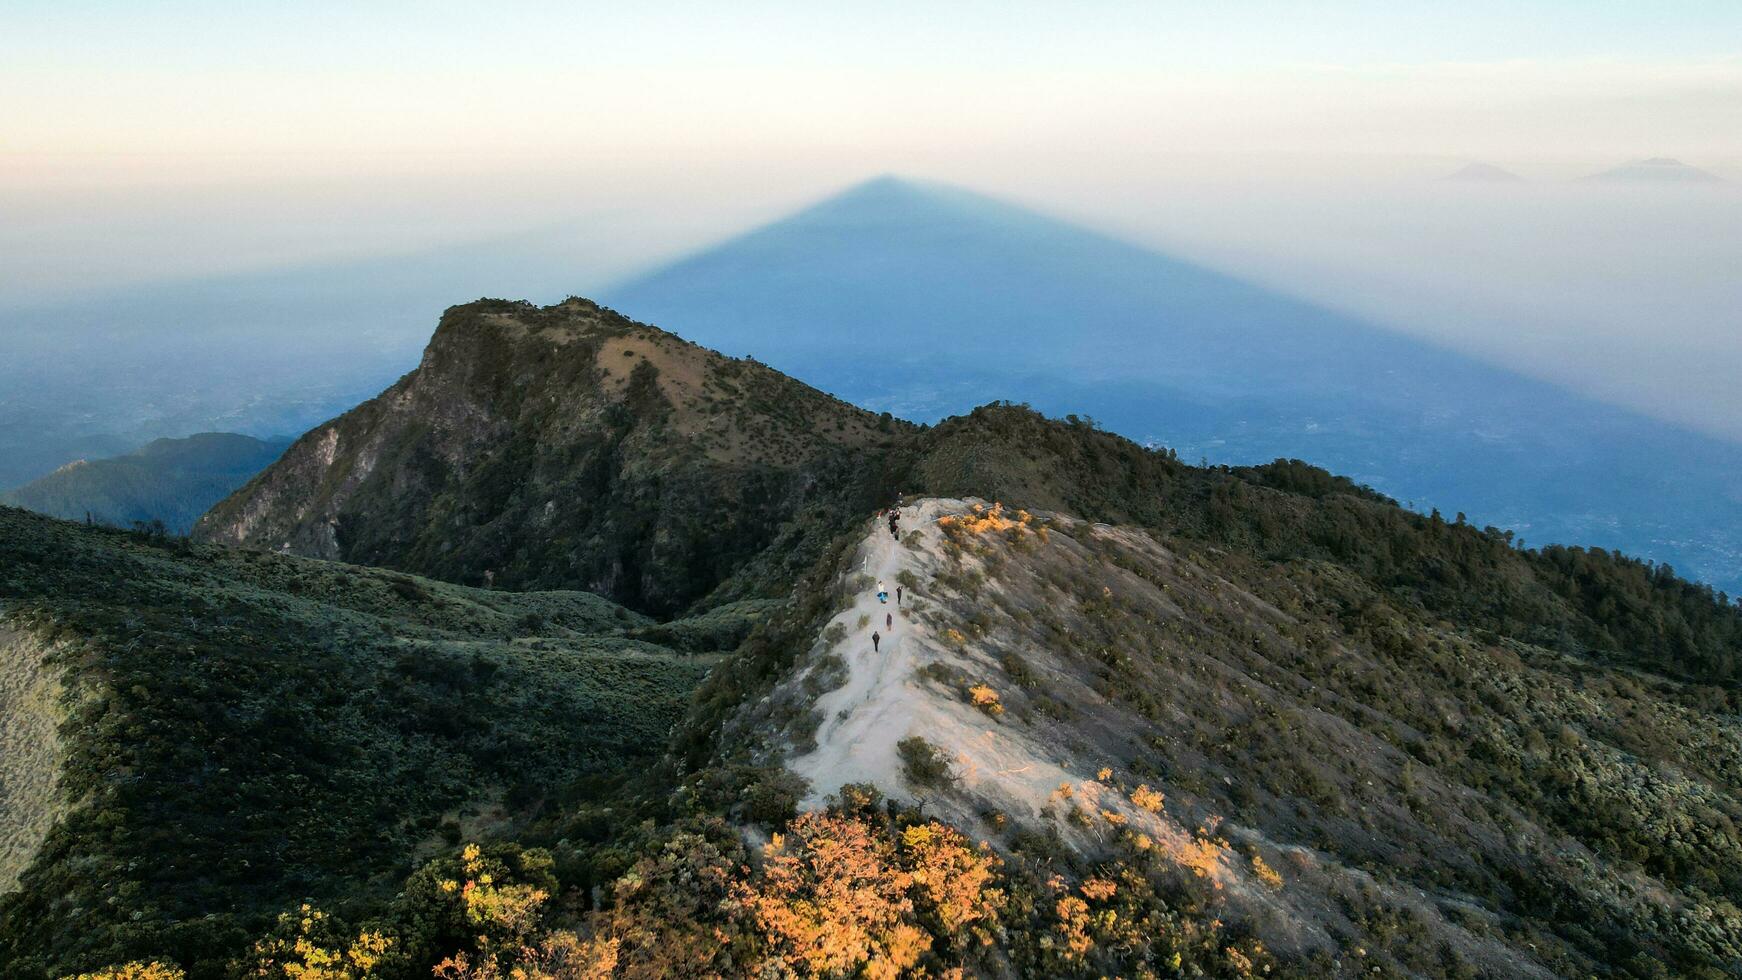 el hermosa paisaje ver desde leyu montaña a amanecer situado en maguetán uno de el más hermosa montañas en Java con un altitud de 3265m encima mar nivel. magotán, Indonesia agosto 1, 2023 foto